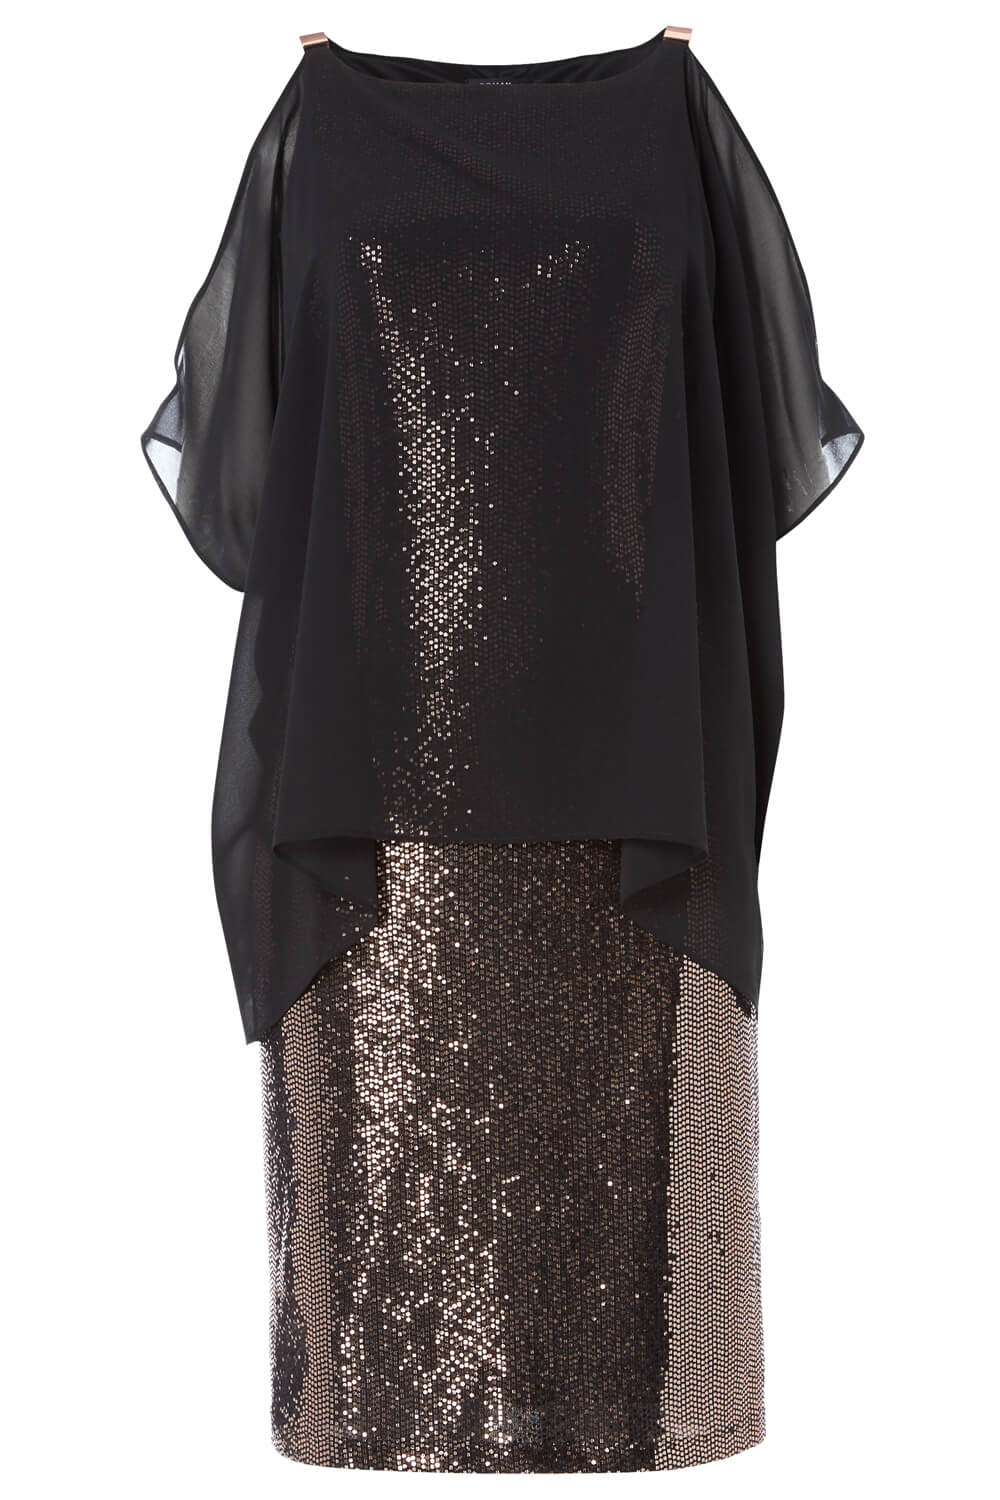 Black Chiffon Cold Shoulder Sequin Dress, Image 5 of 5